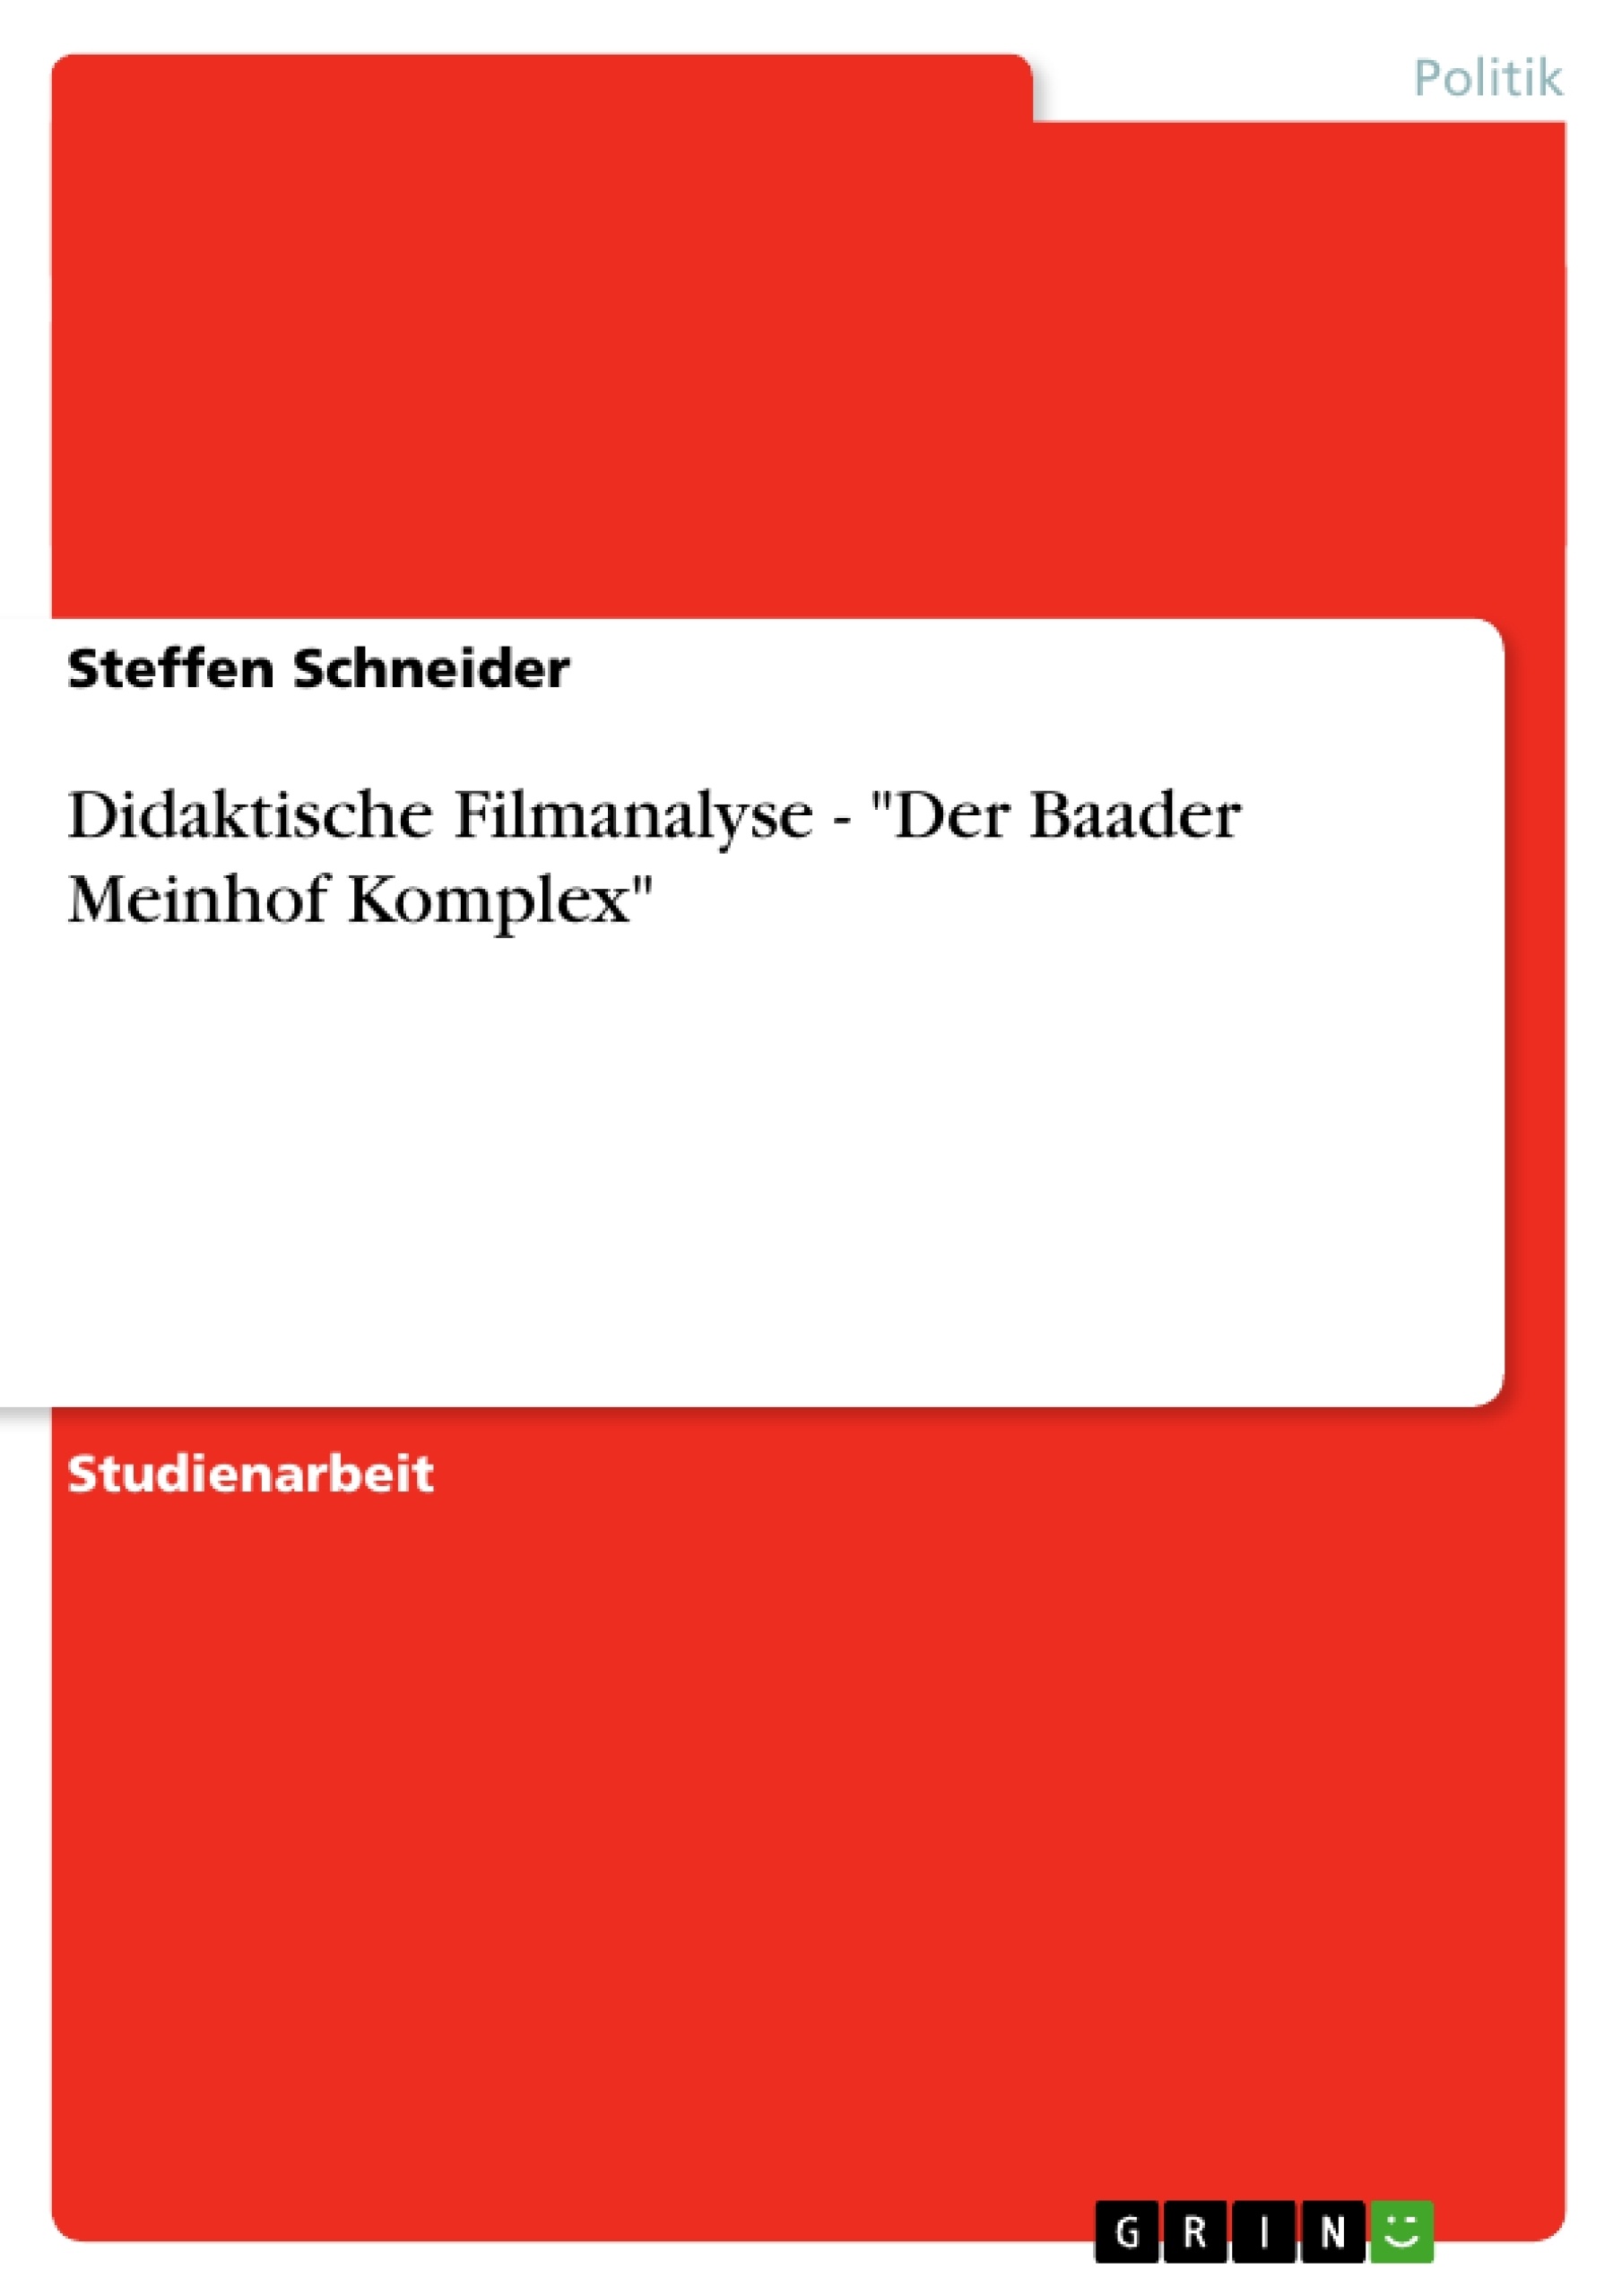 Titre: Didaktische Filmanalyse - "Der Baader Meinhof Komplex"